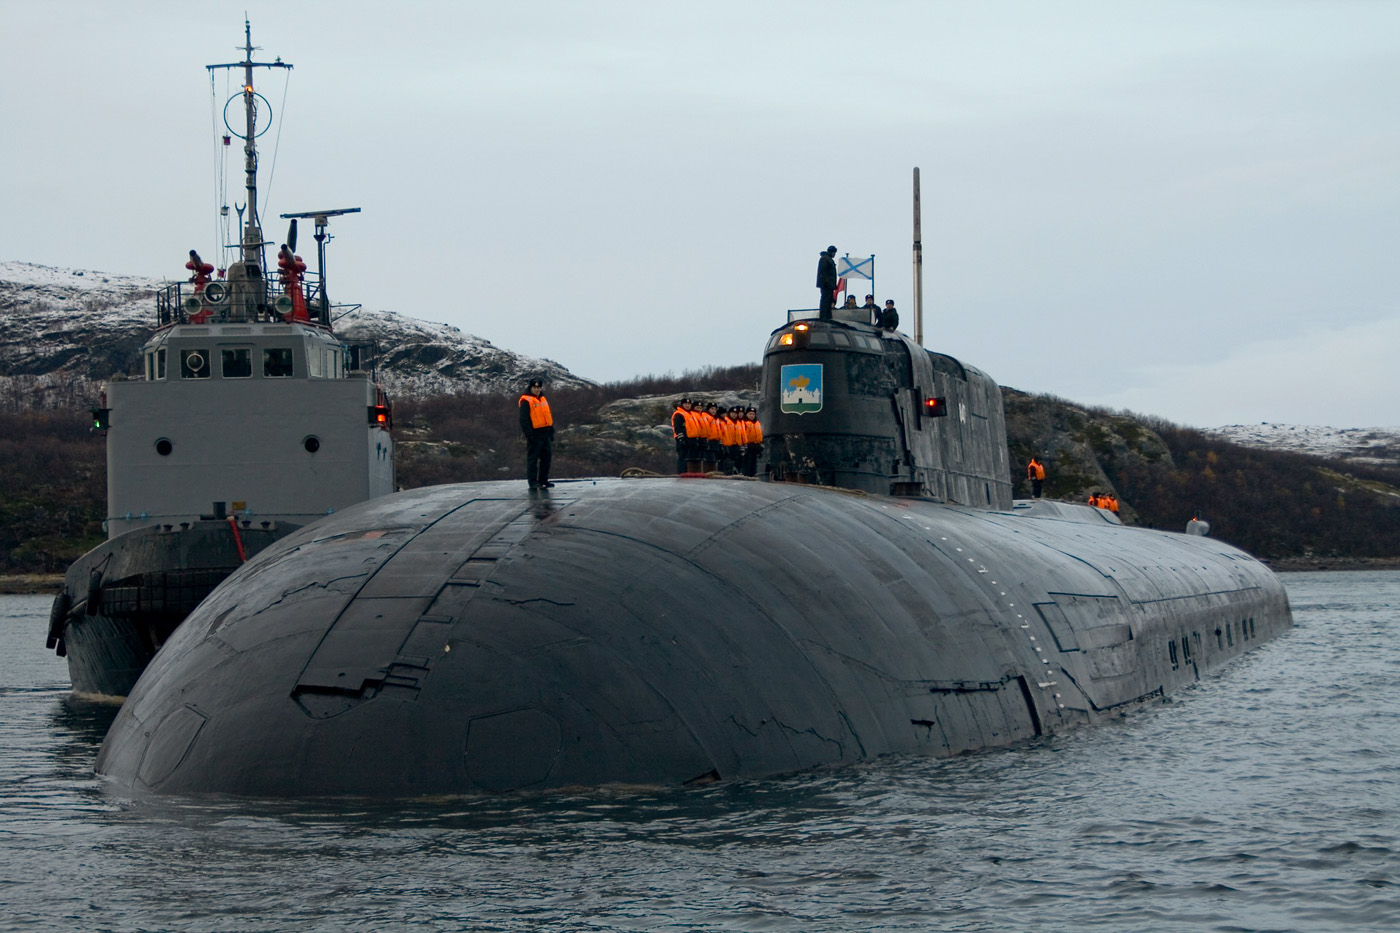 Пл й. Лодки 949а Антей. Подводная лодка 949а Антей. Подводный крейсер Омск проекта 949а Антей. Подводная лодка Омск проекта 949а.